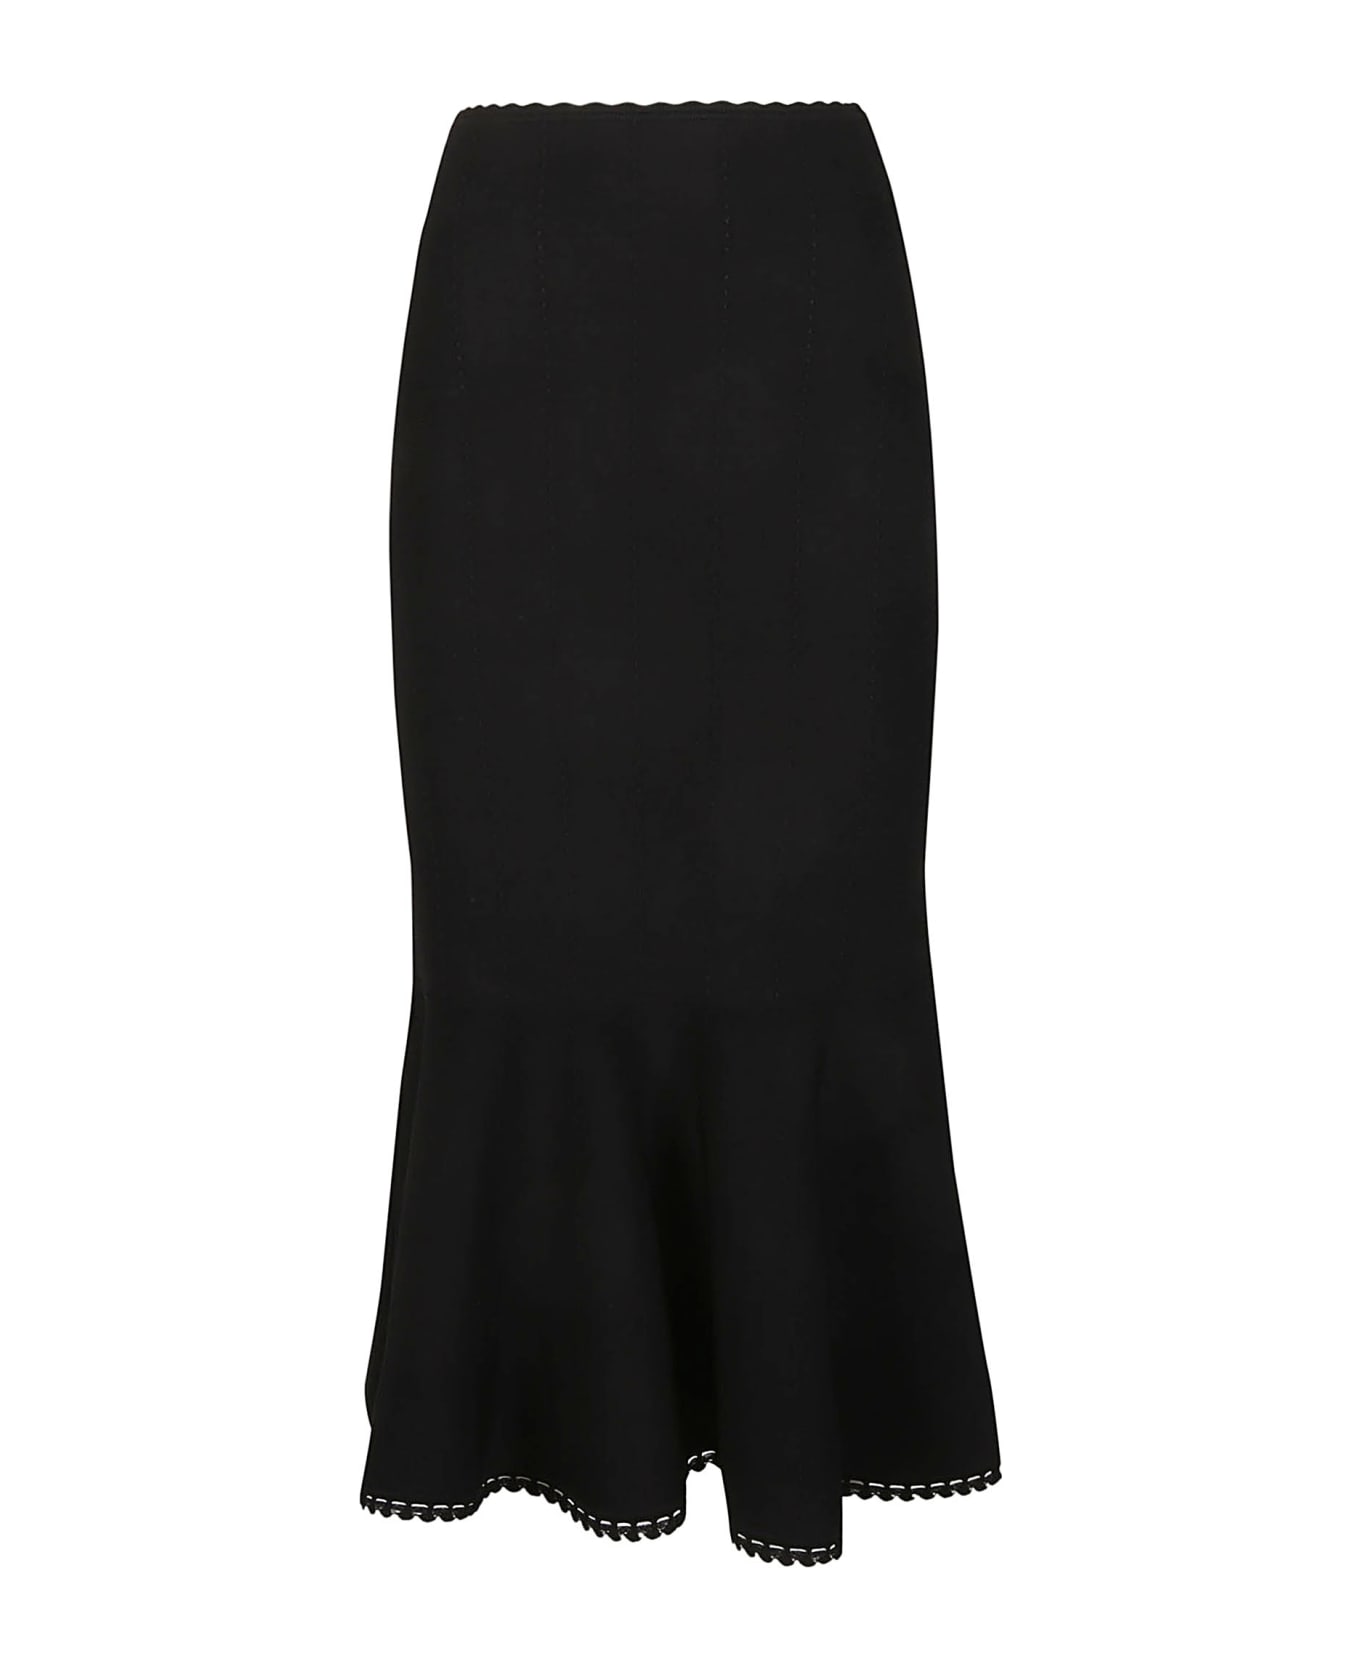 Victoria Beckham Scallop Trim Flared Skirt - Black